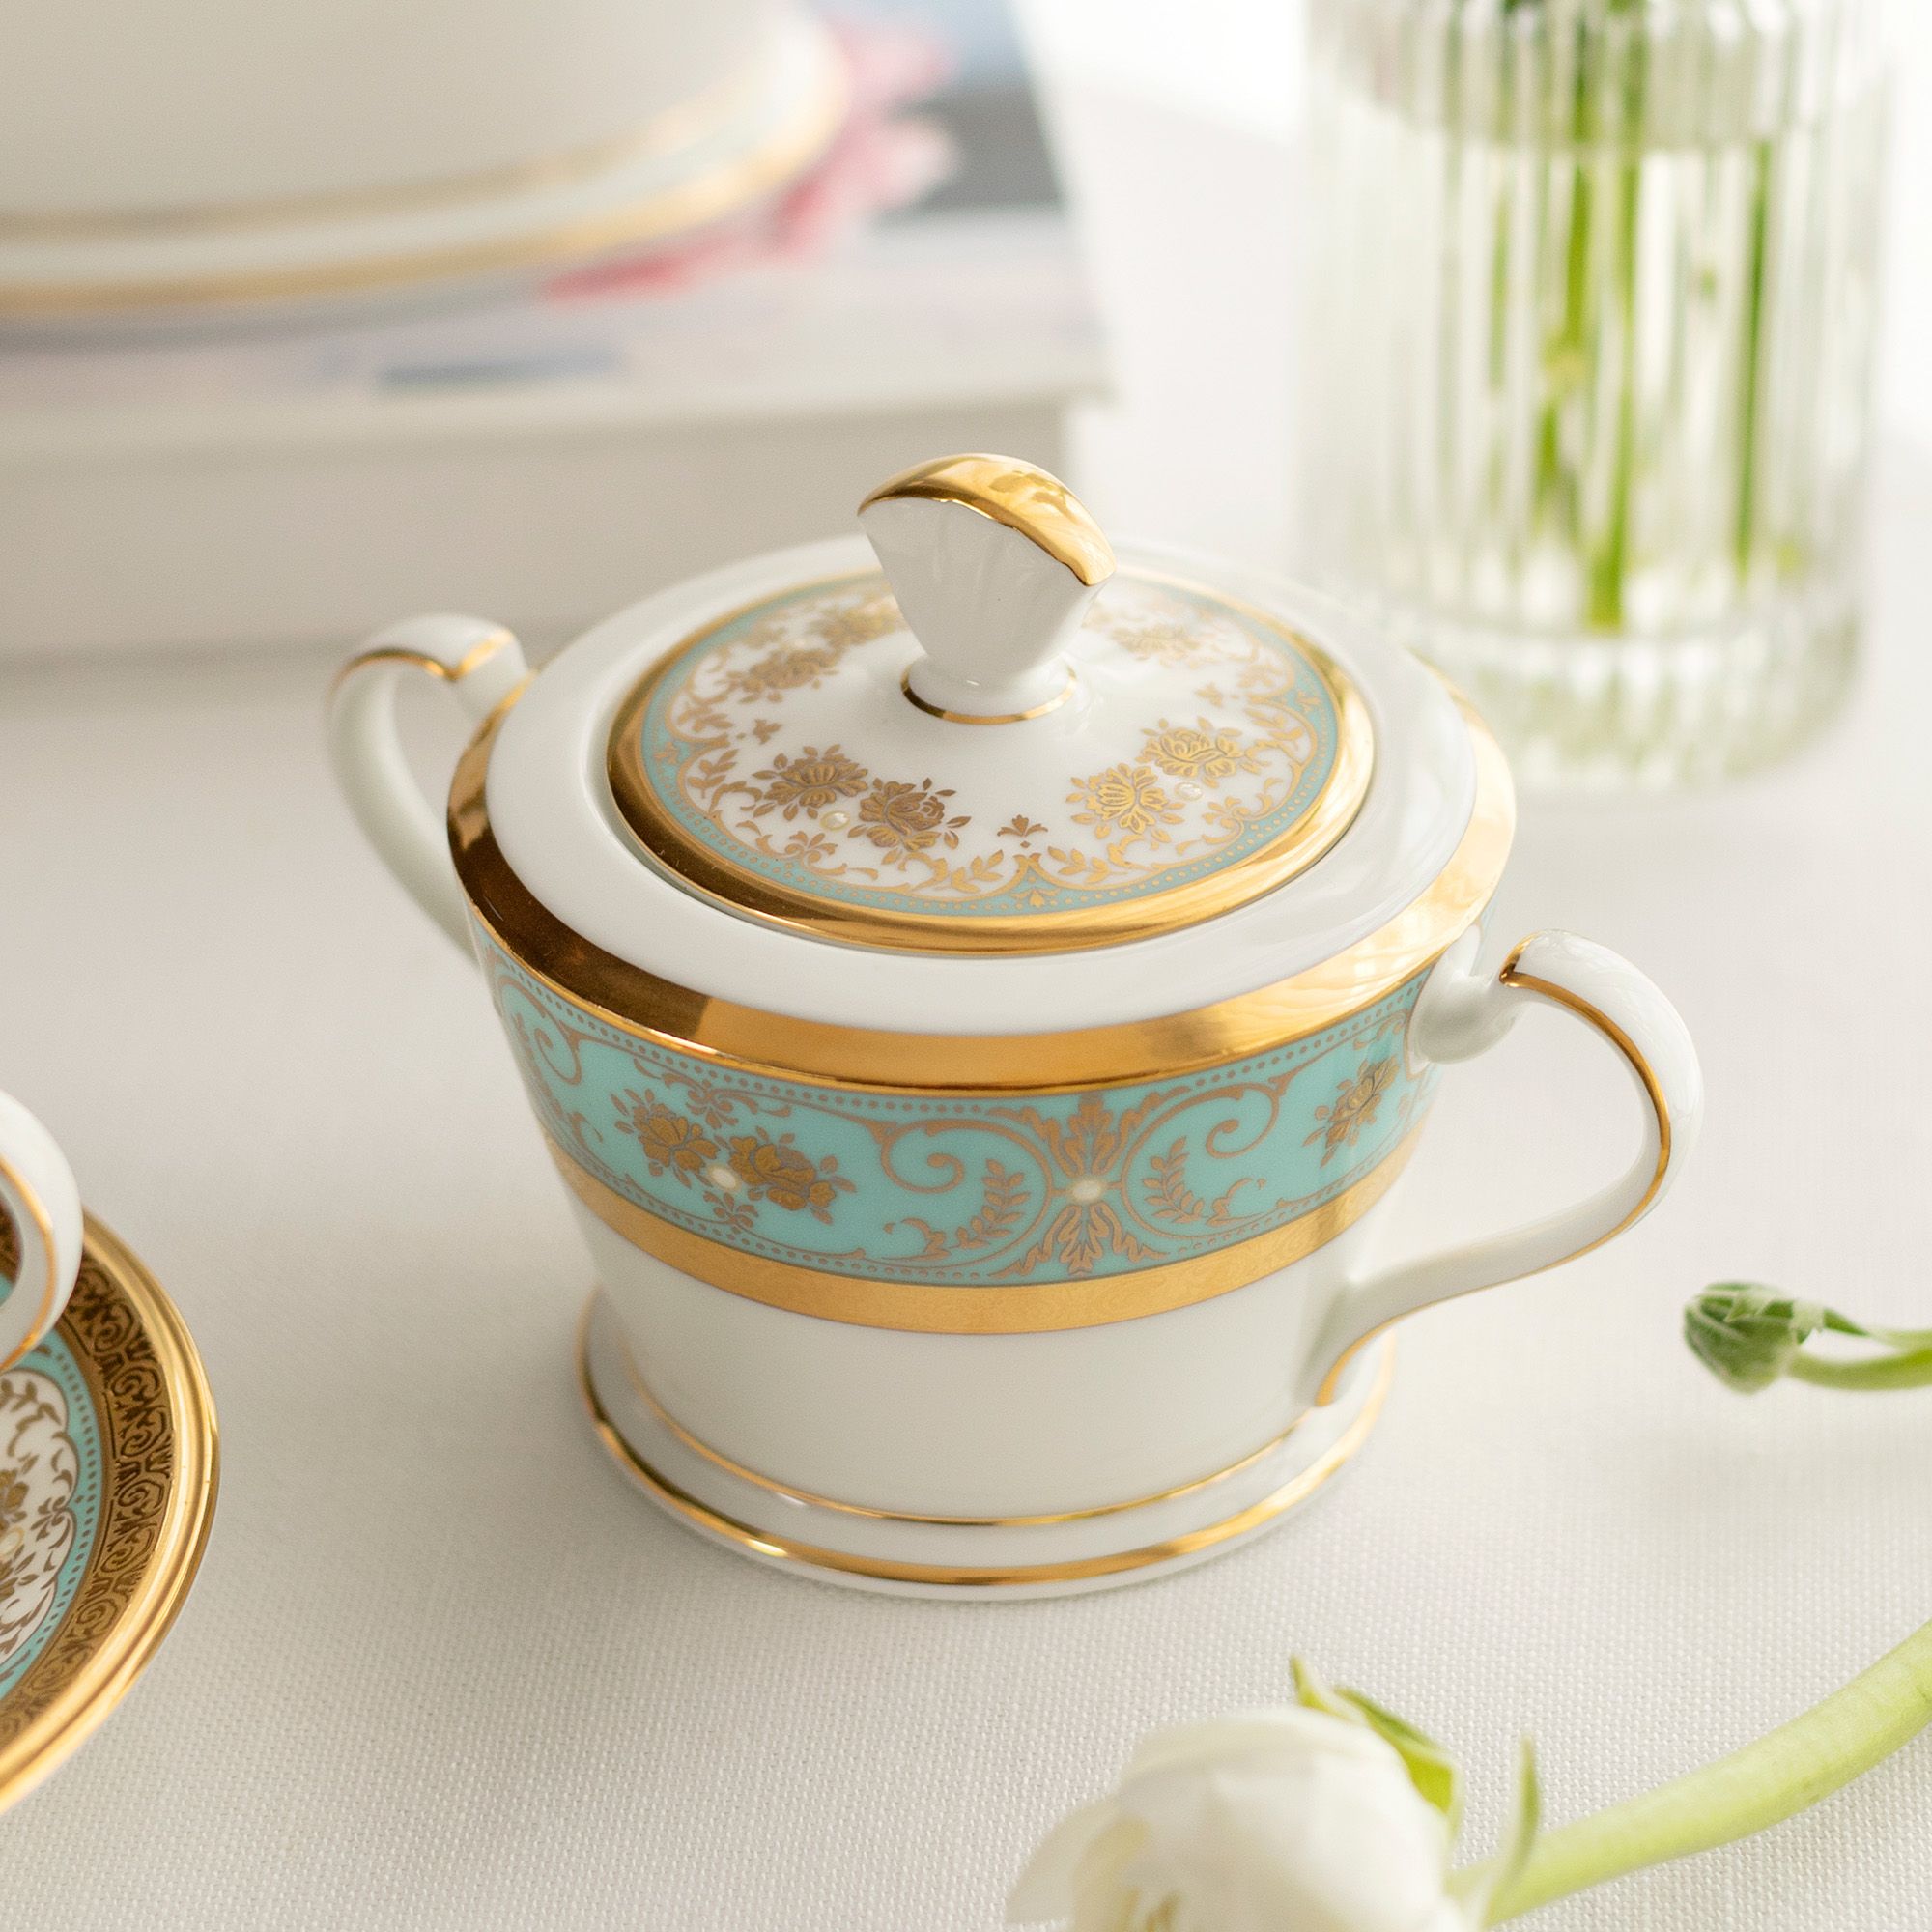  Bộ ấm chén uống trà 15 món sứ xương cao cấp | Georgian Turquoise 4857J-T017L 